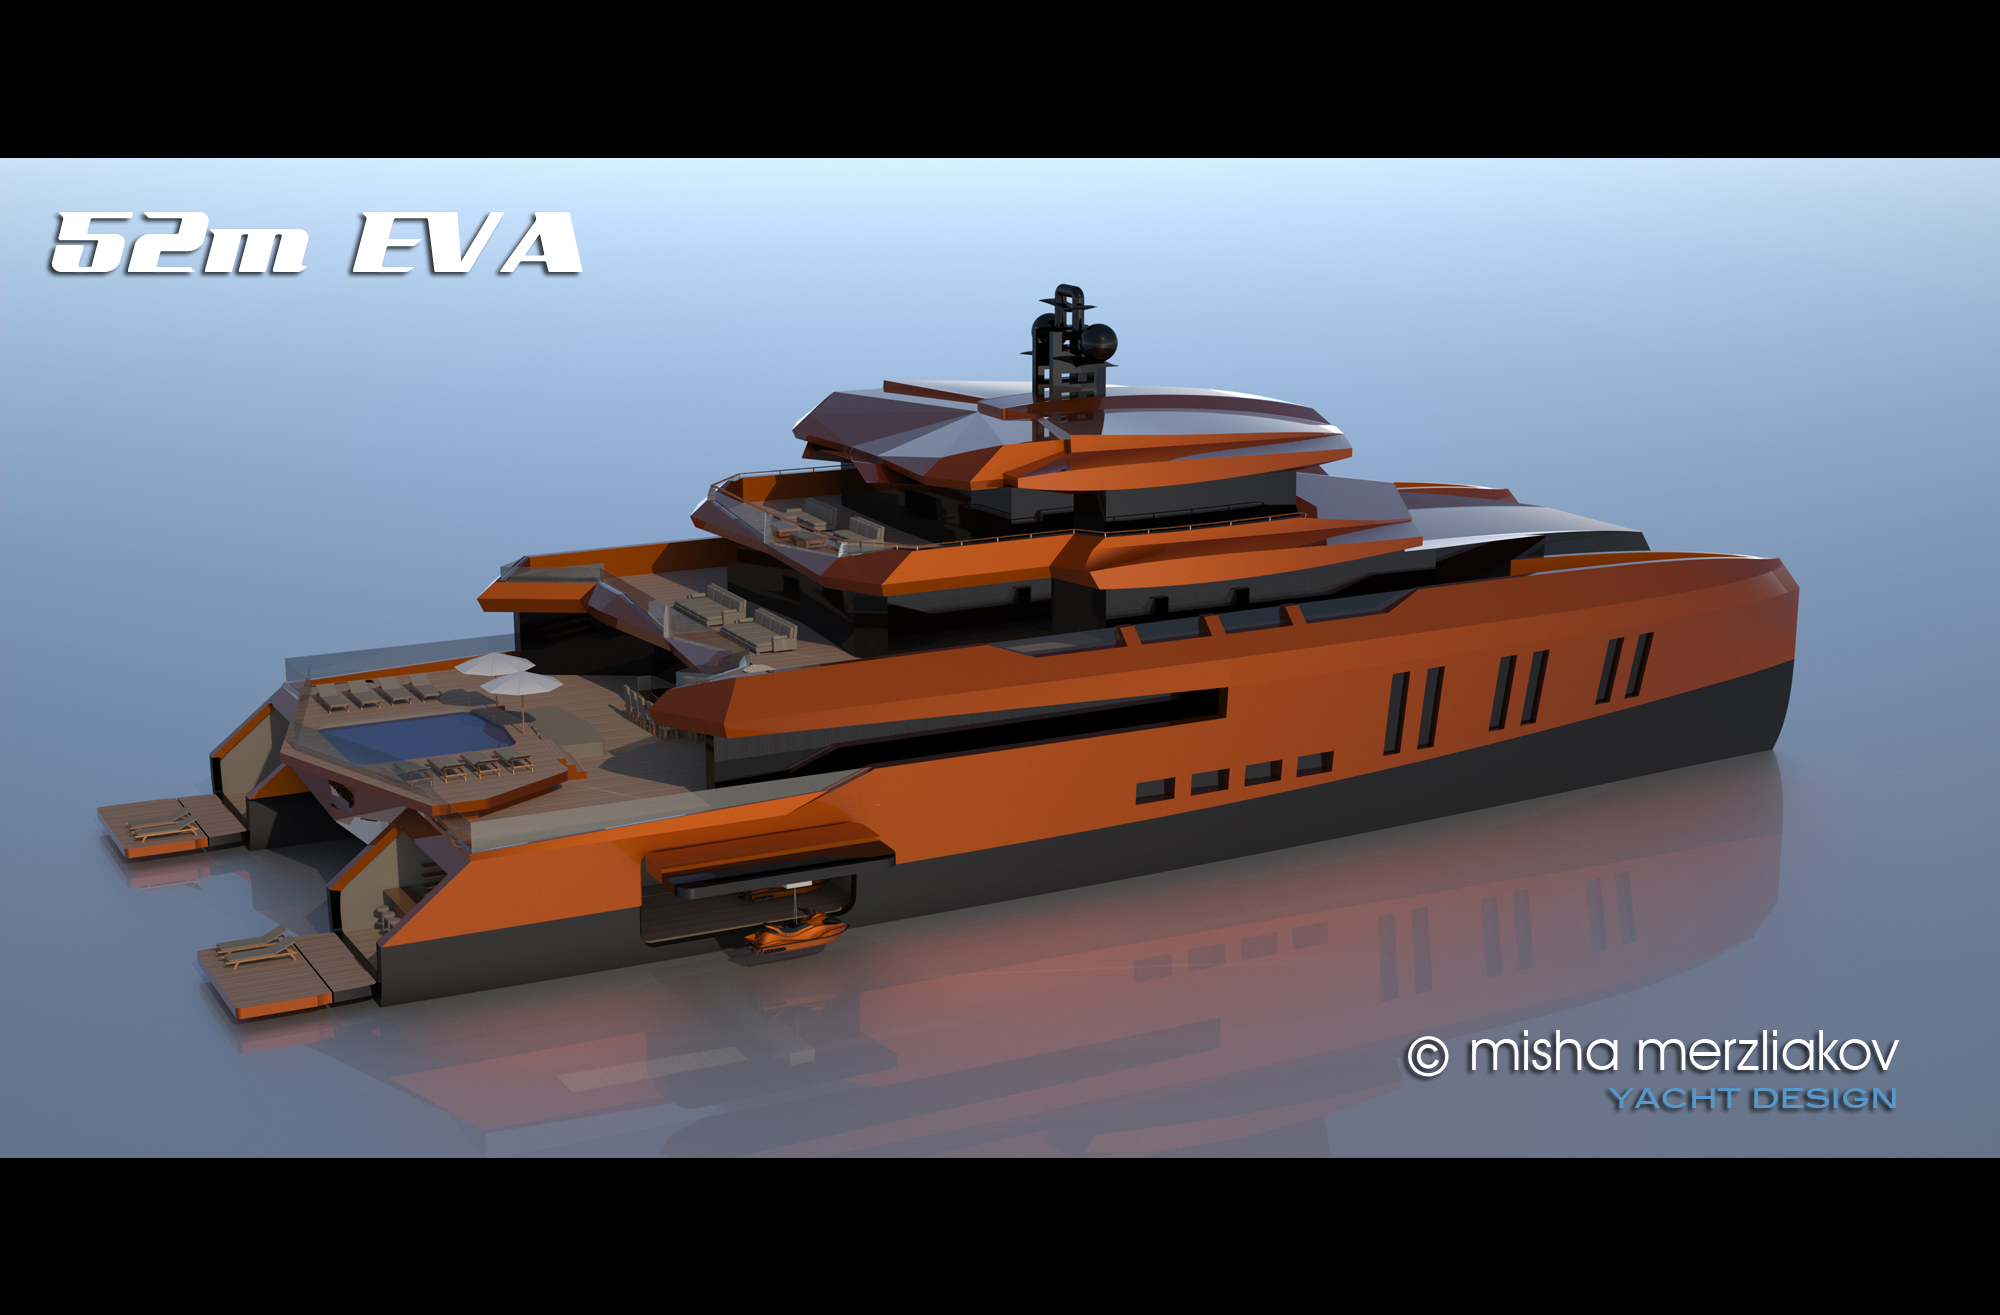 Misha Merzliakov Yacht Design